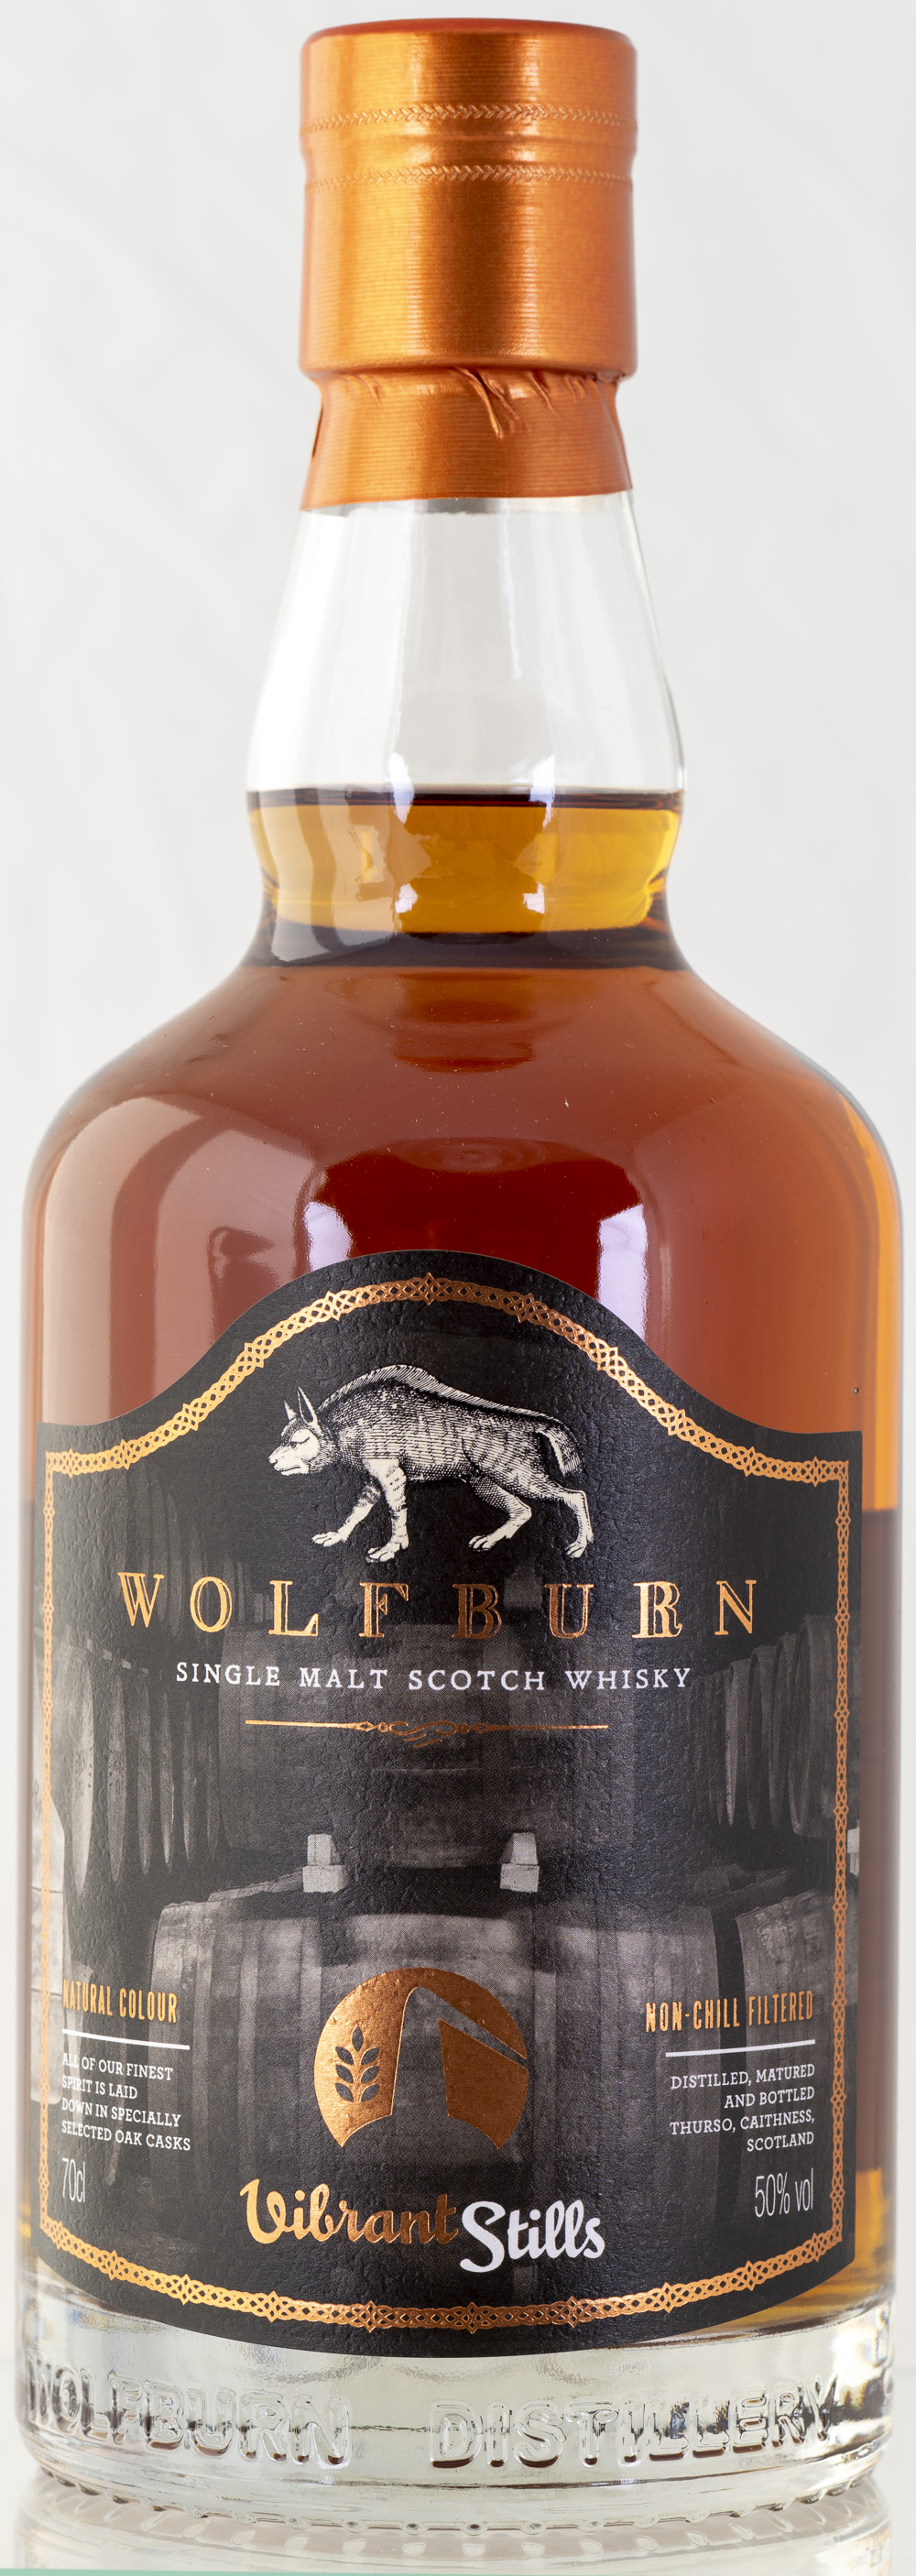 Billede: PHC_2208 - Wolfburn Vibrant Stills 4 years - bottle front.jpg